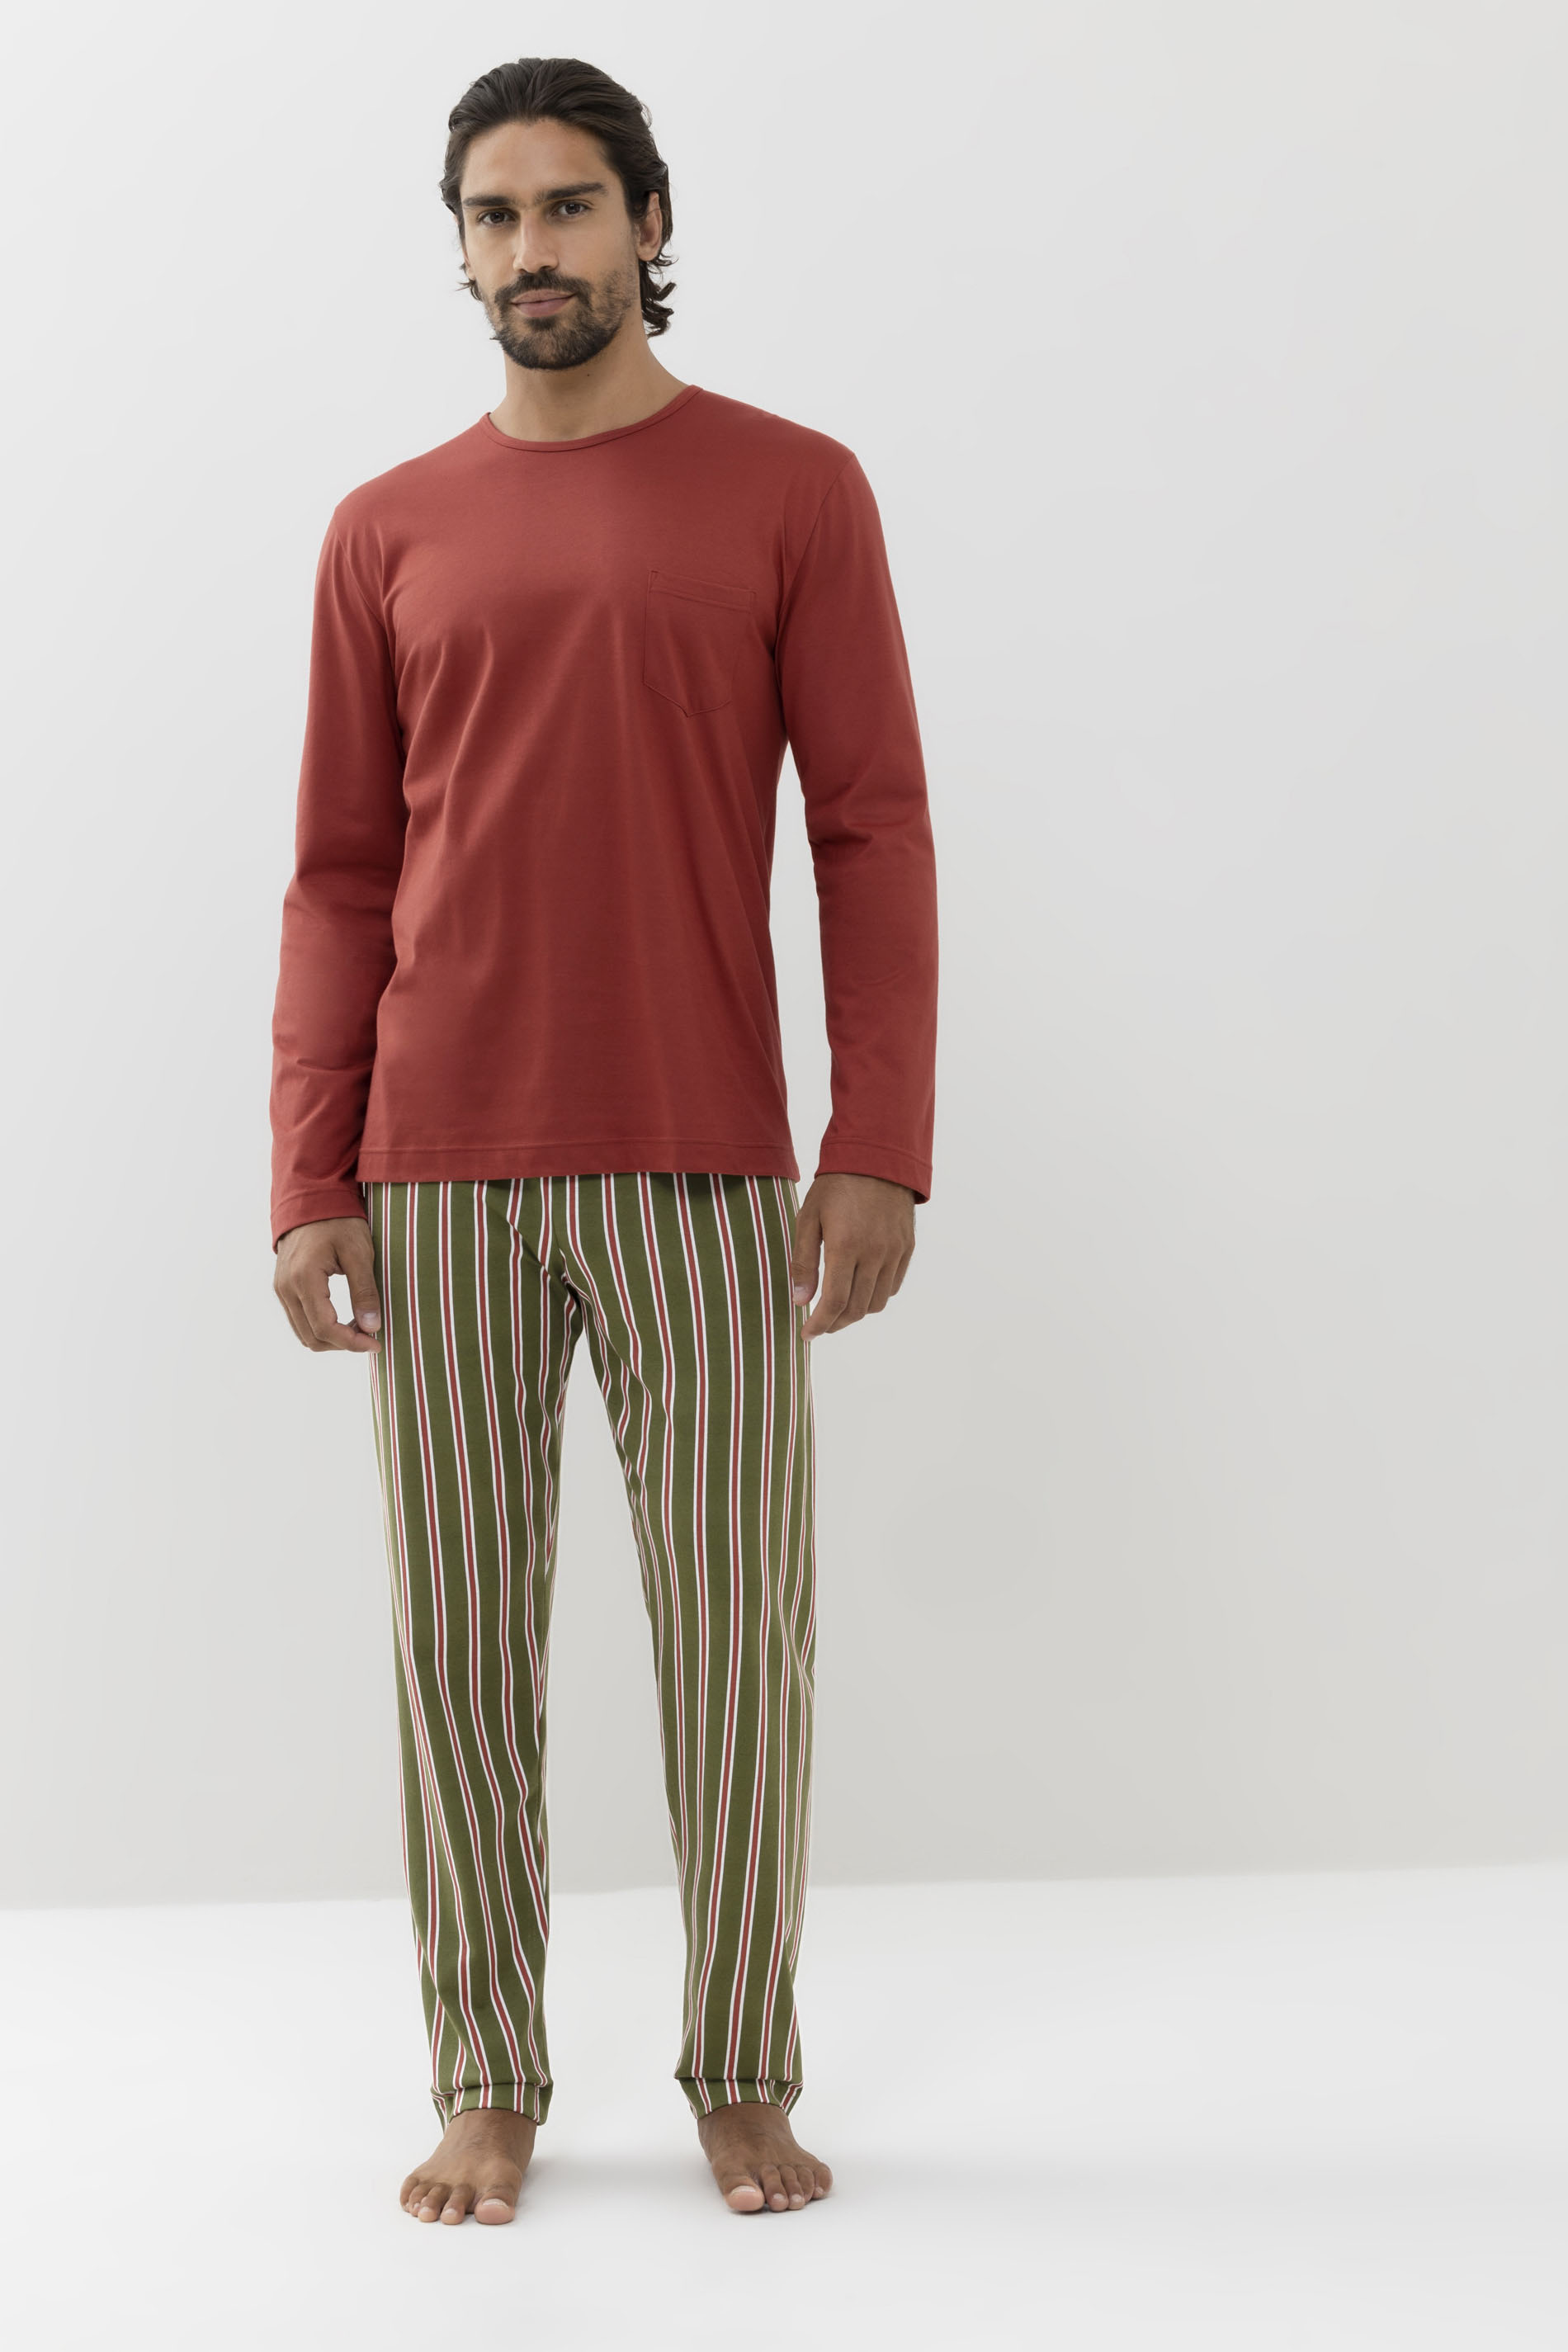 Schlafanzug Serie Stripes Frontansicht | mey®